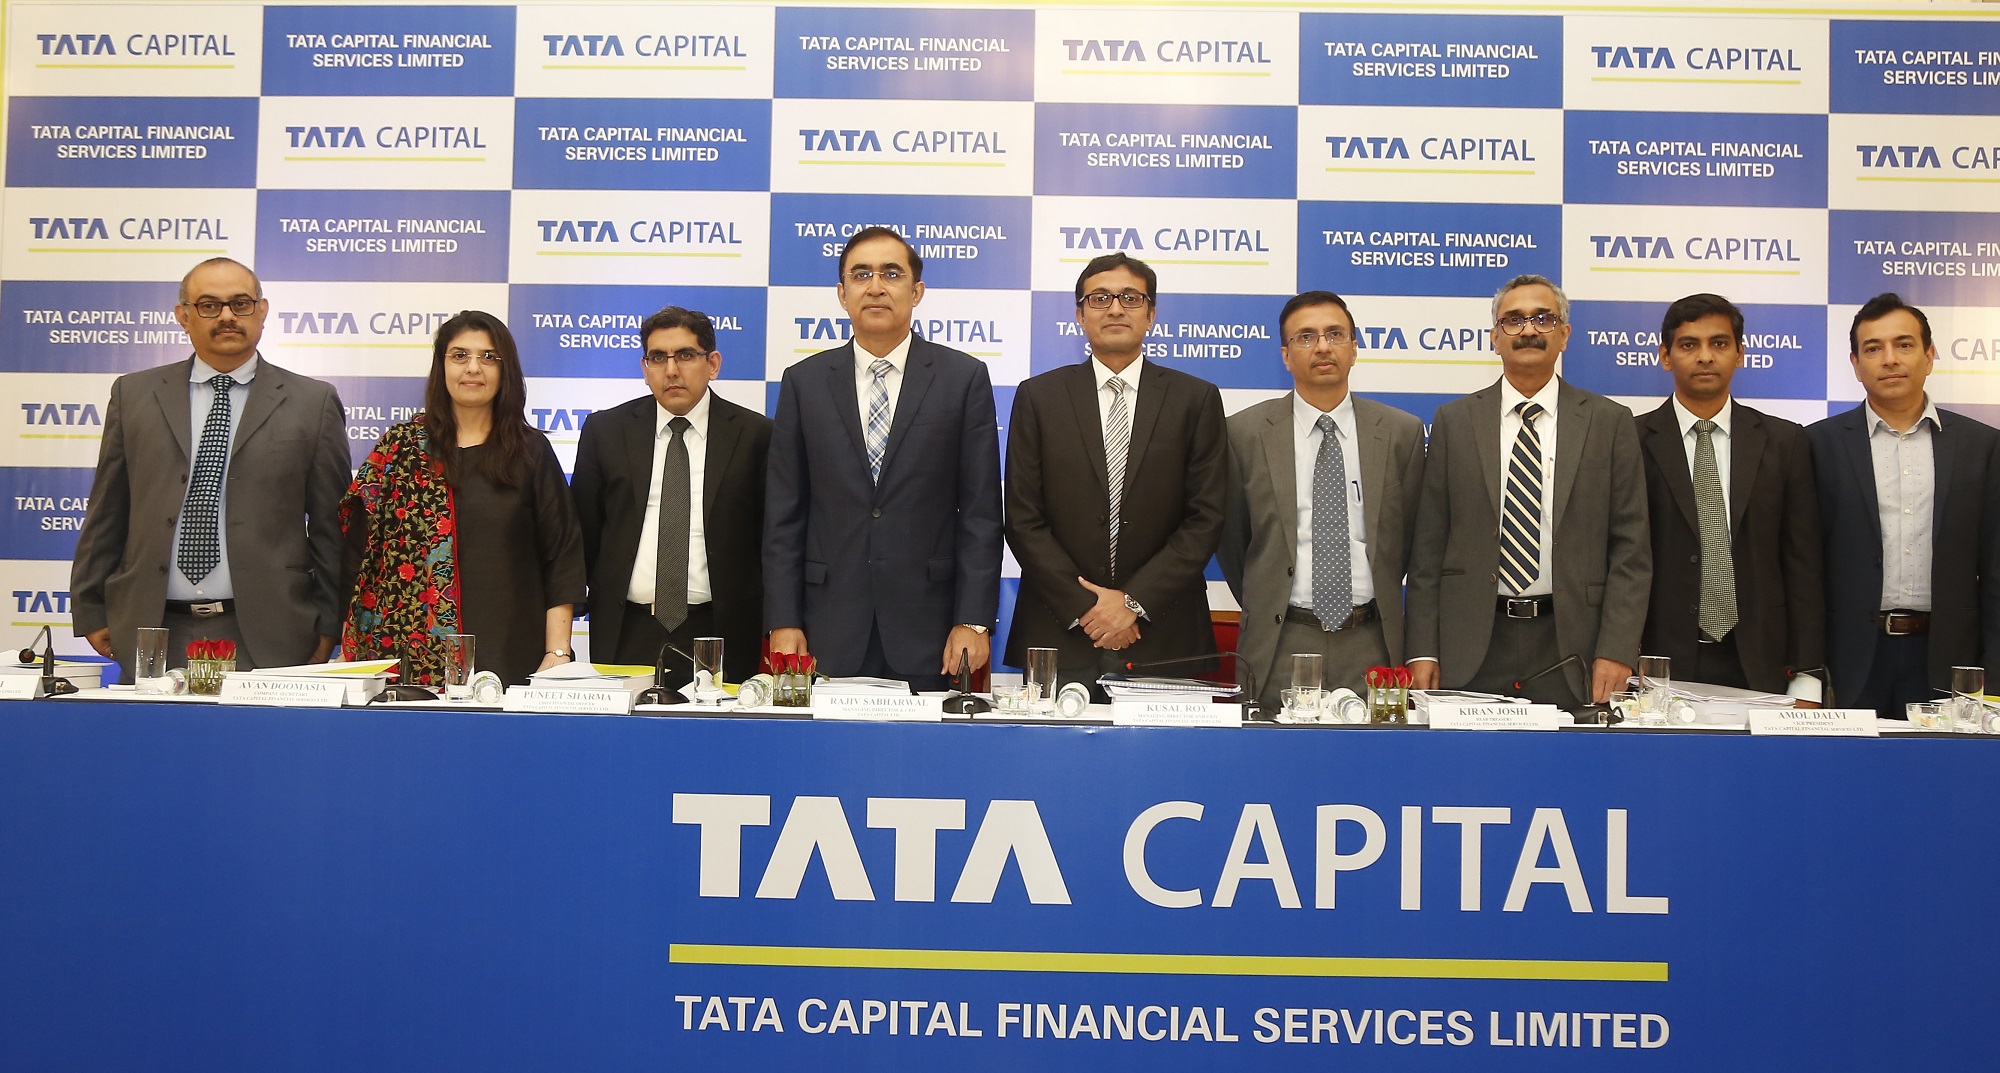 Shubman Gill To Become Brand Ambassador For Tata Capital: Upcoming Financial Benefits